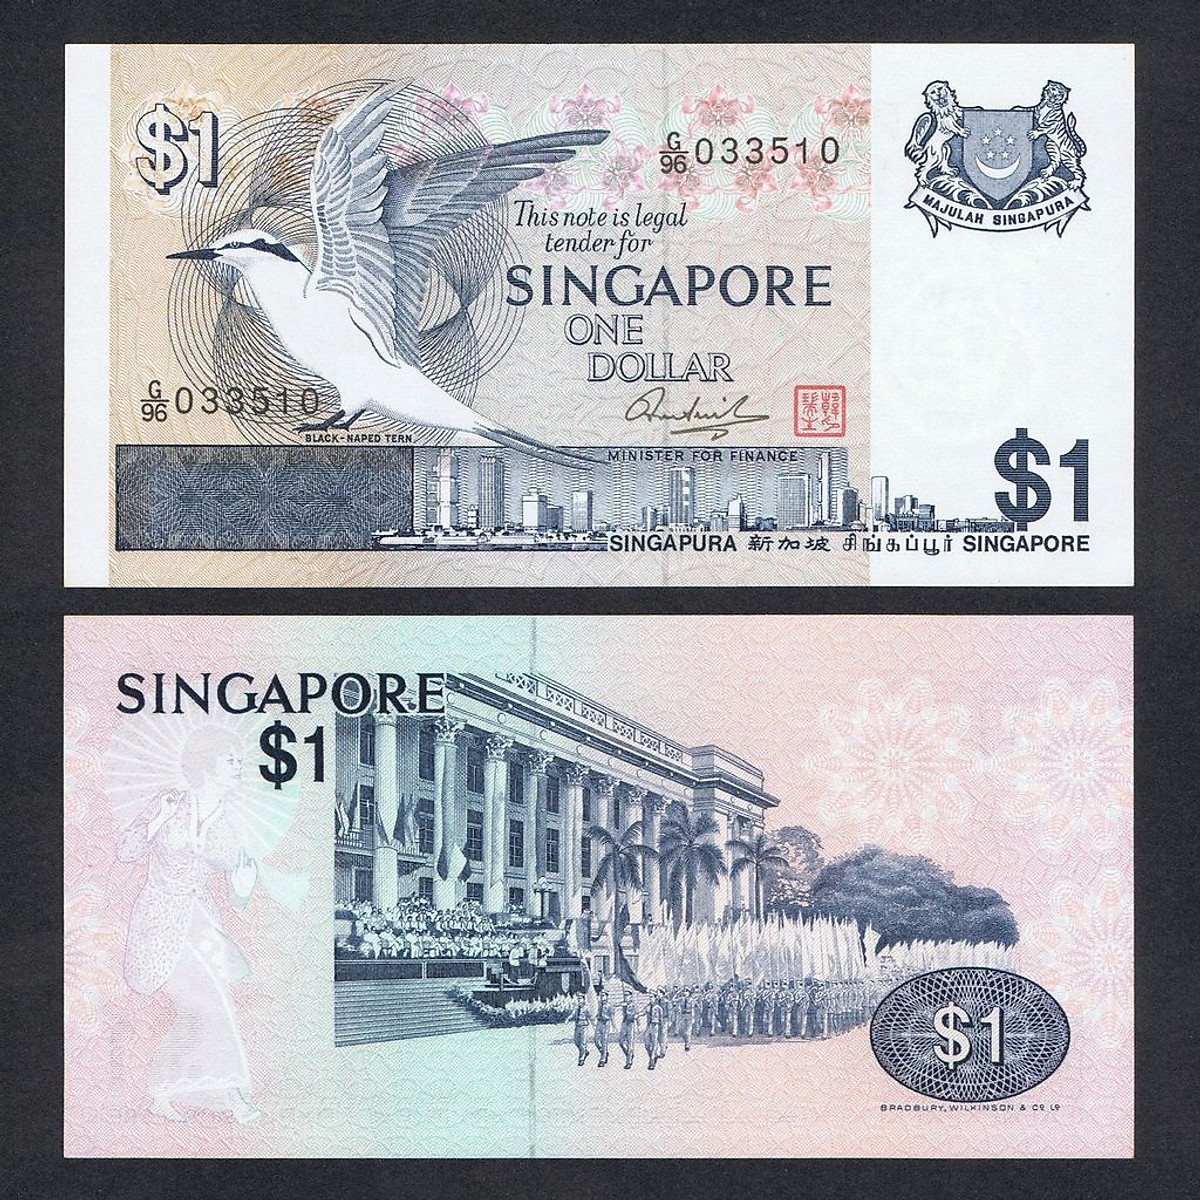 Tiền thế giới, 1 dollar Singapore hình ảnh chú chim - Tiền mới keng 100% - Tặng túi nilon bảo quản